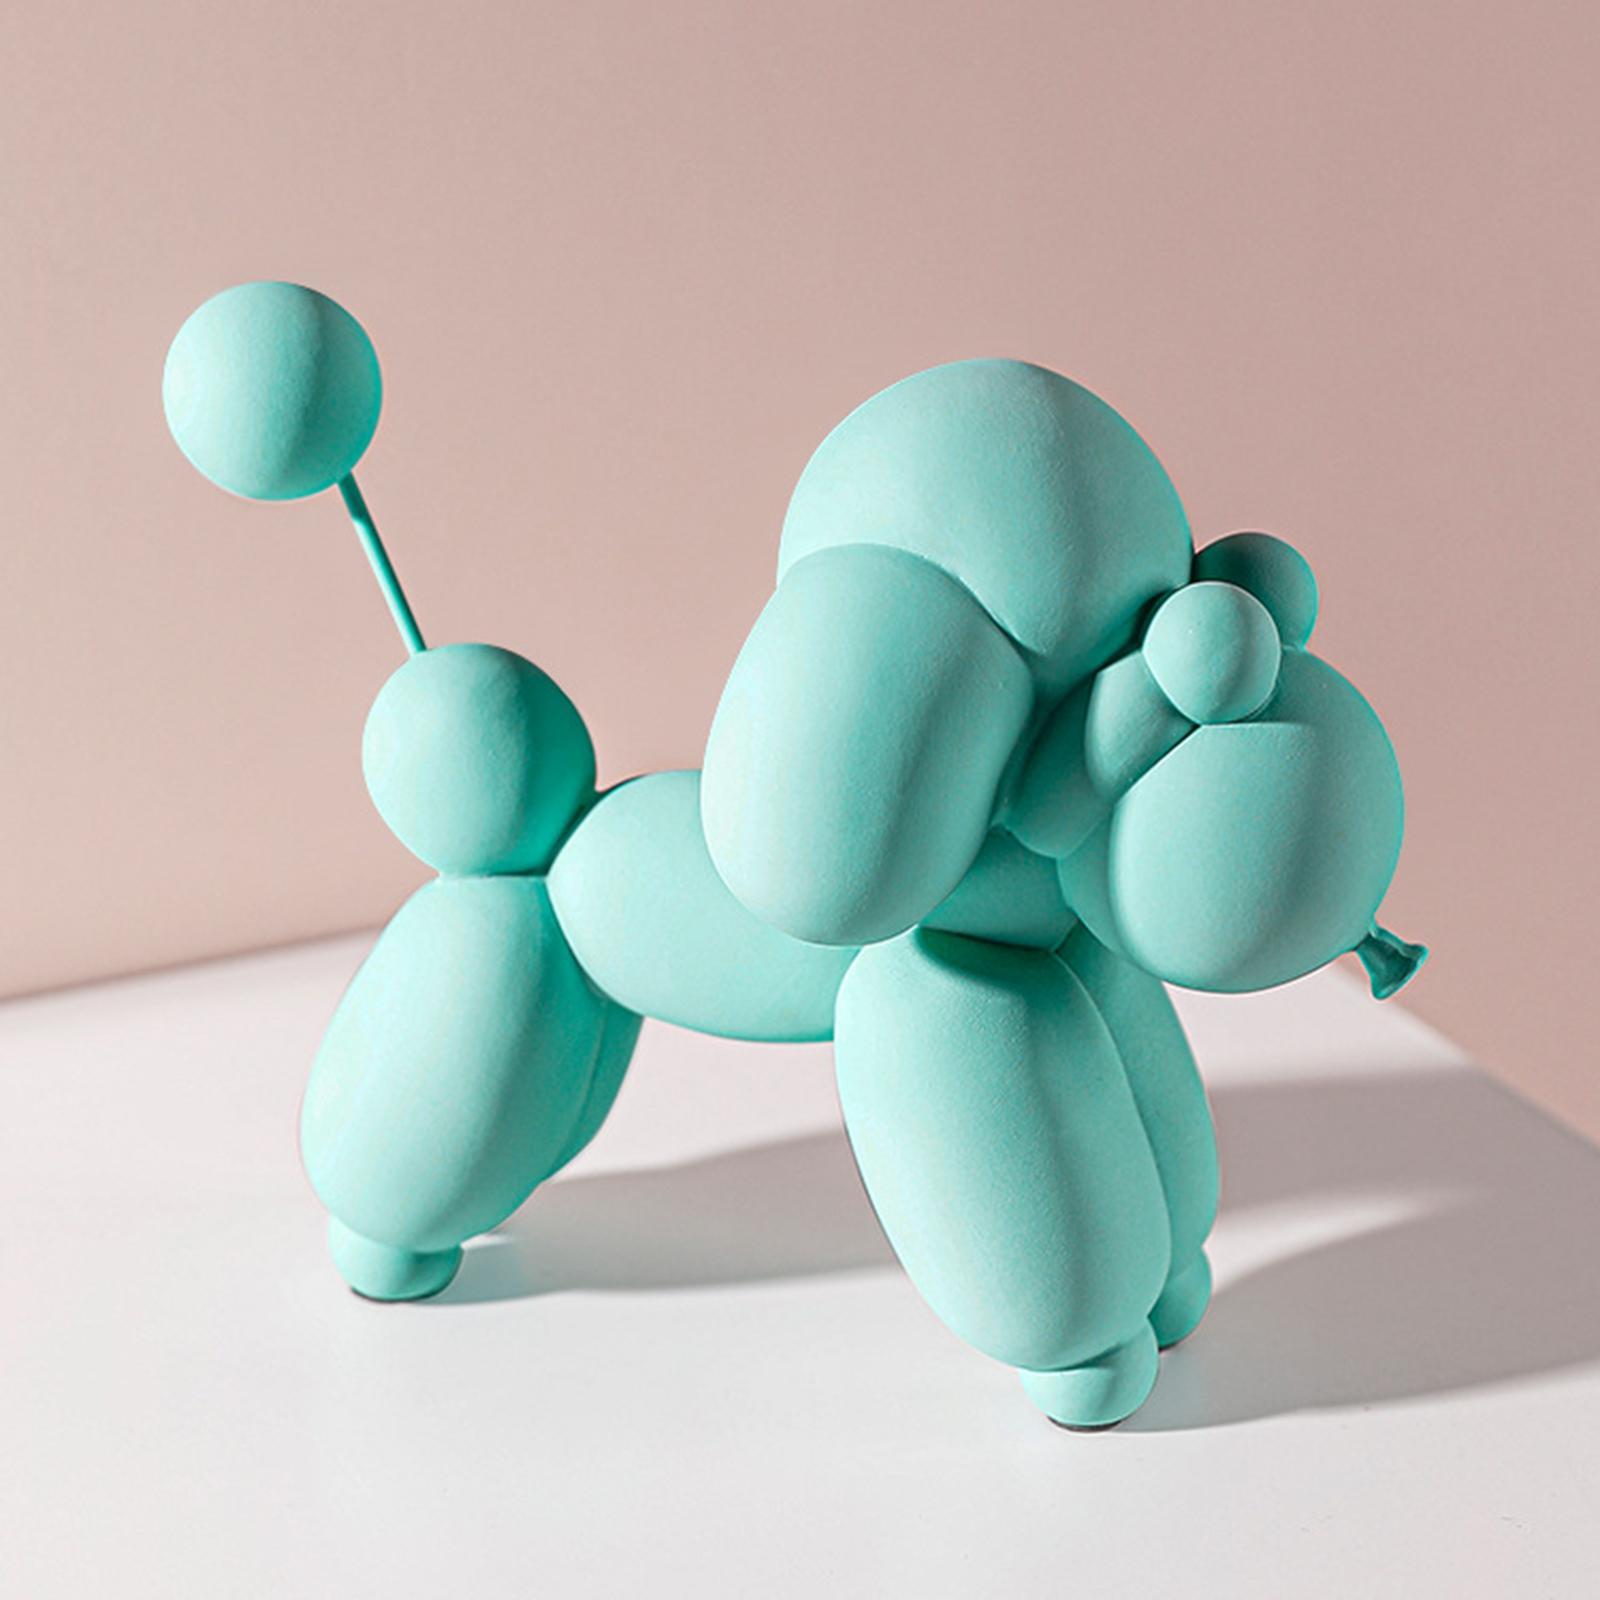 Modern Balloon Dog Statue Resin Art Animal Living Room Desk Home Decor Blue